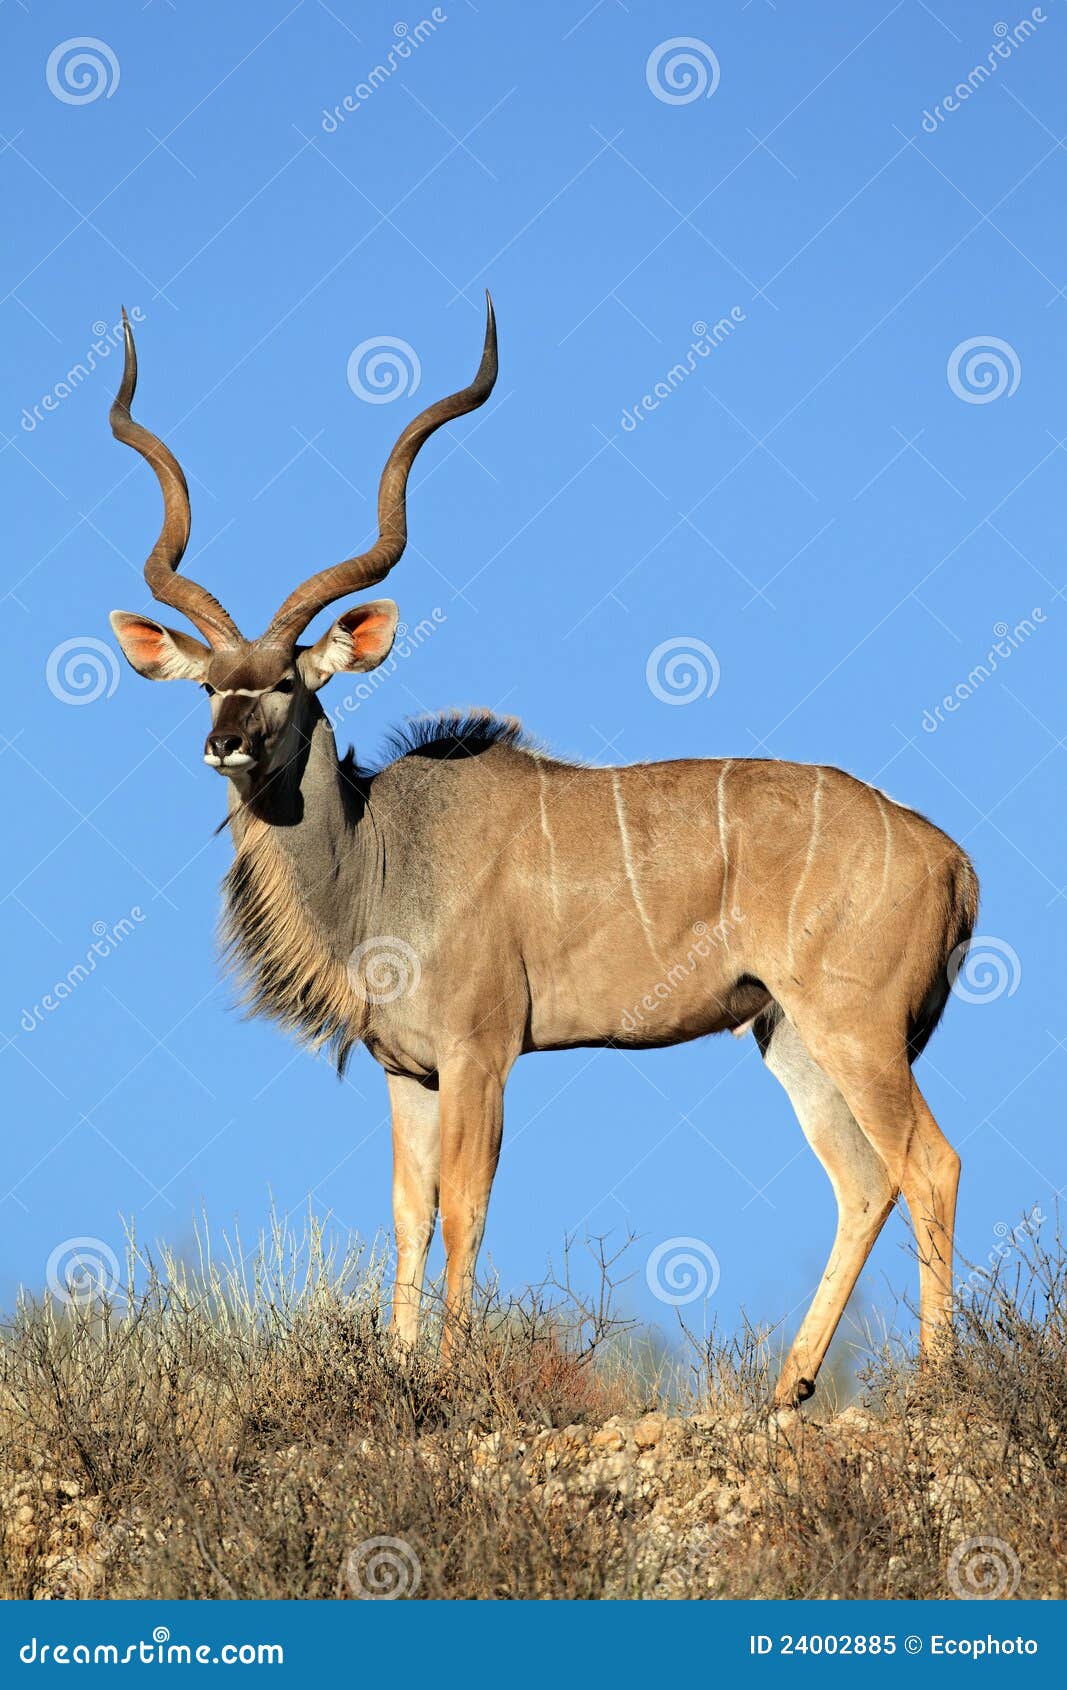 kudu antelope